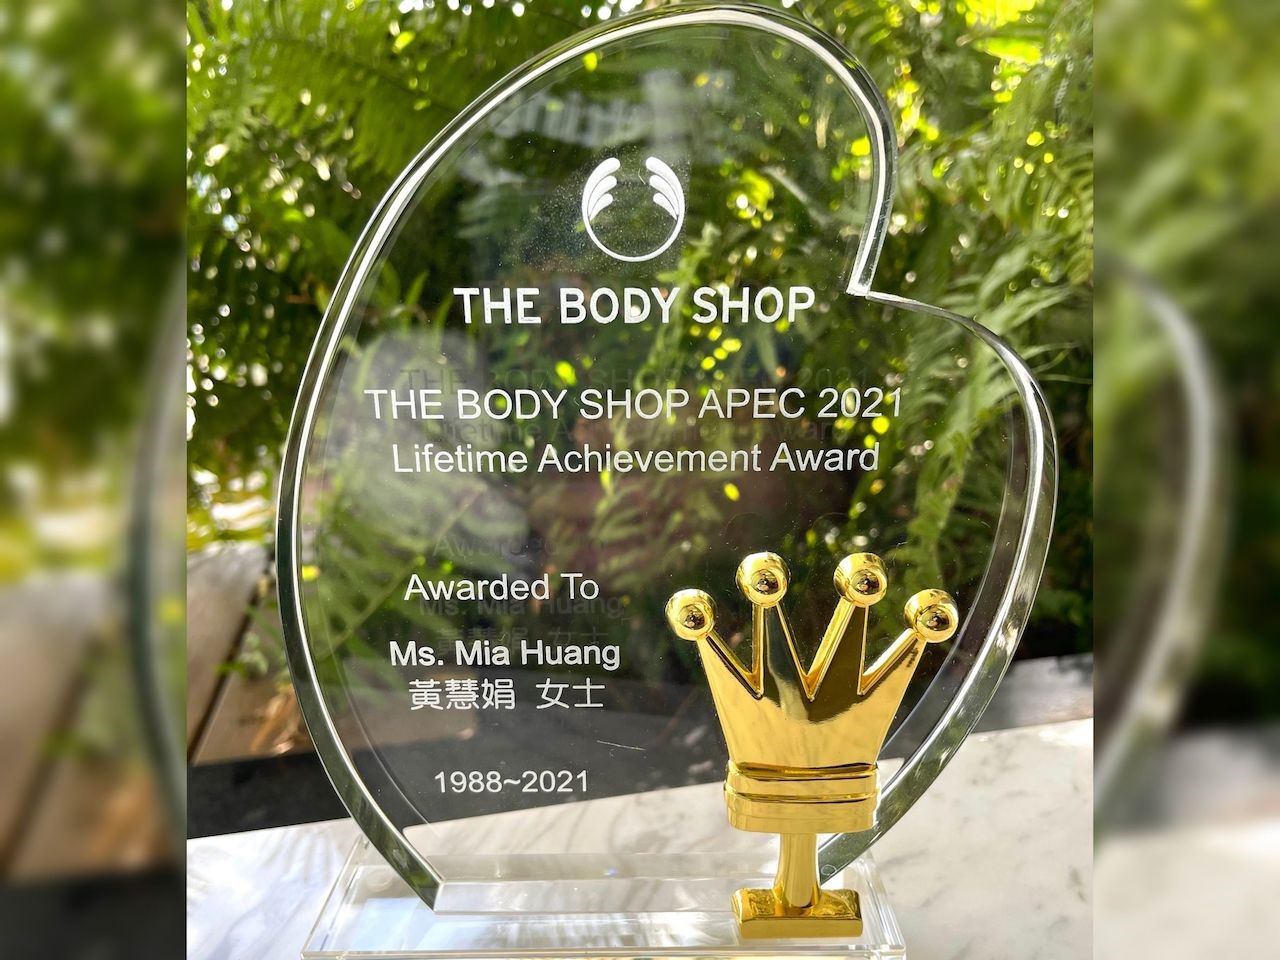 【有影】The Body Shop 2021 全球總部頒發亞太區首座終身成就獎予台灣 美體小舖創辦人黃慧娟 獨子曾峙屏接班 傳承美好理念